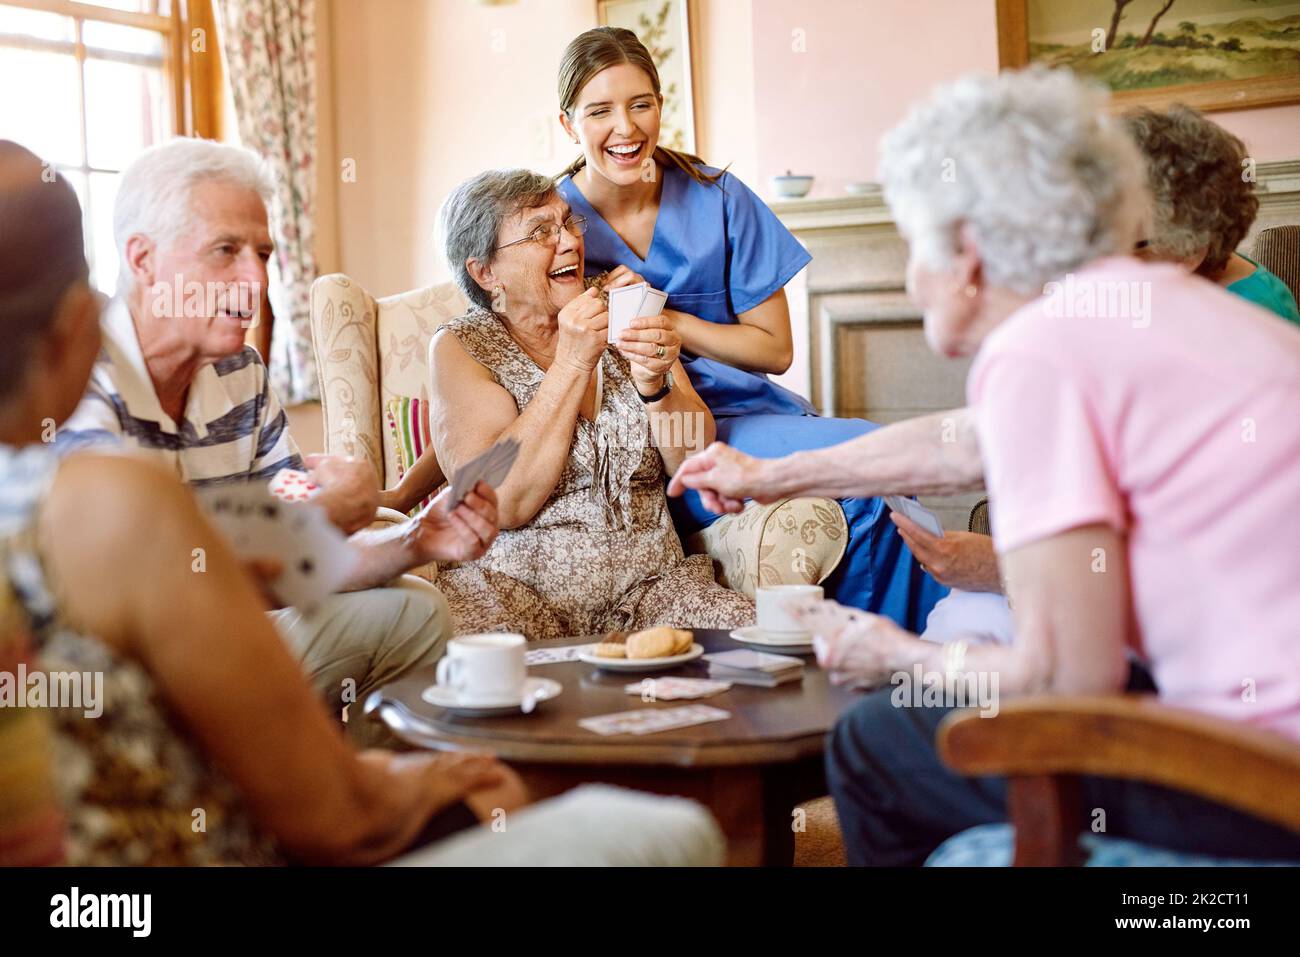 Die Spannung hält das Spiel spannend. Aufnahme einer Gruppe glücklicher Senioren, die in ihrem Altersheim ein Kartenspiel spielen, während eine Krankenschwester zuschaut. Stockfoto